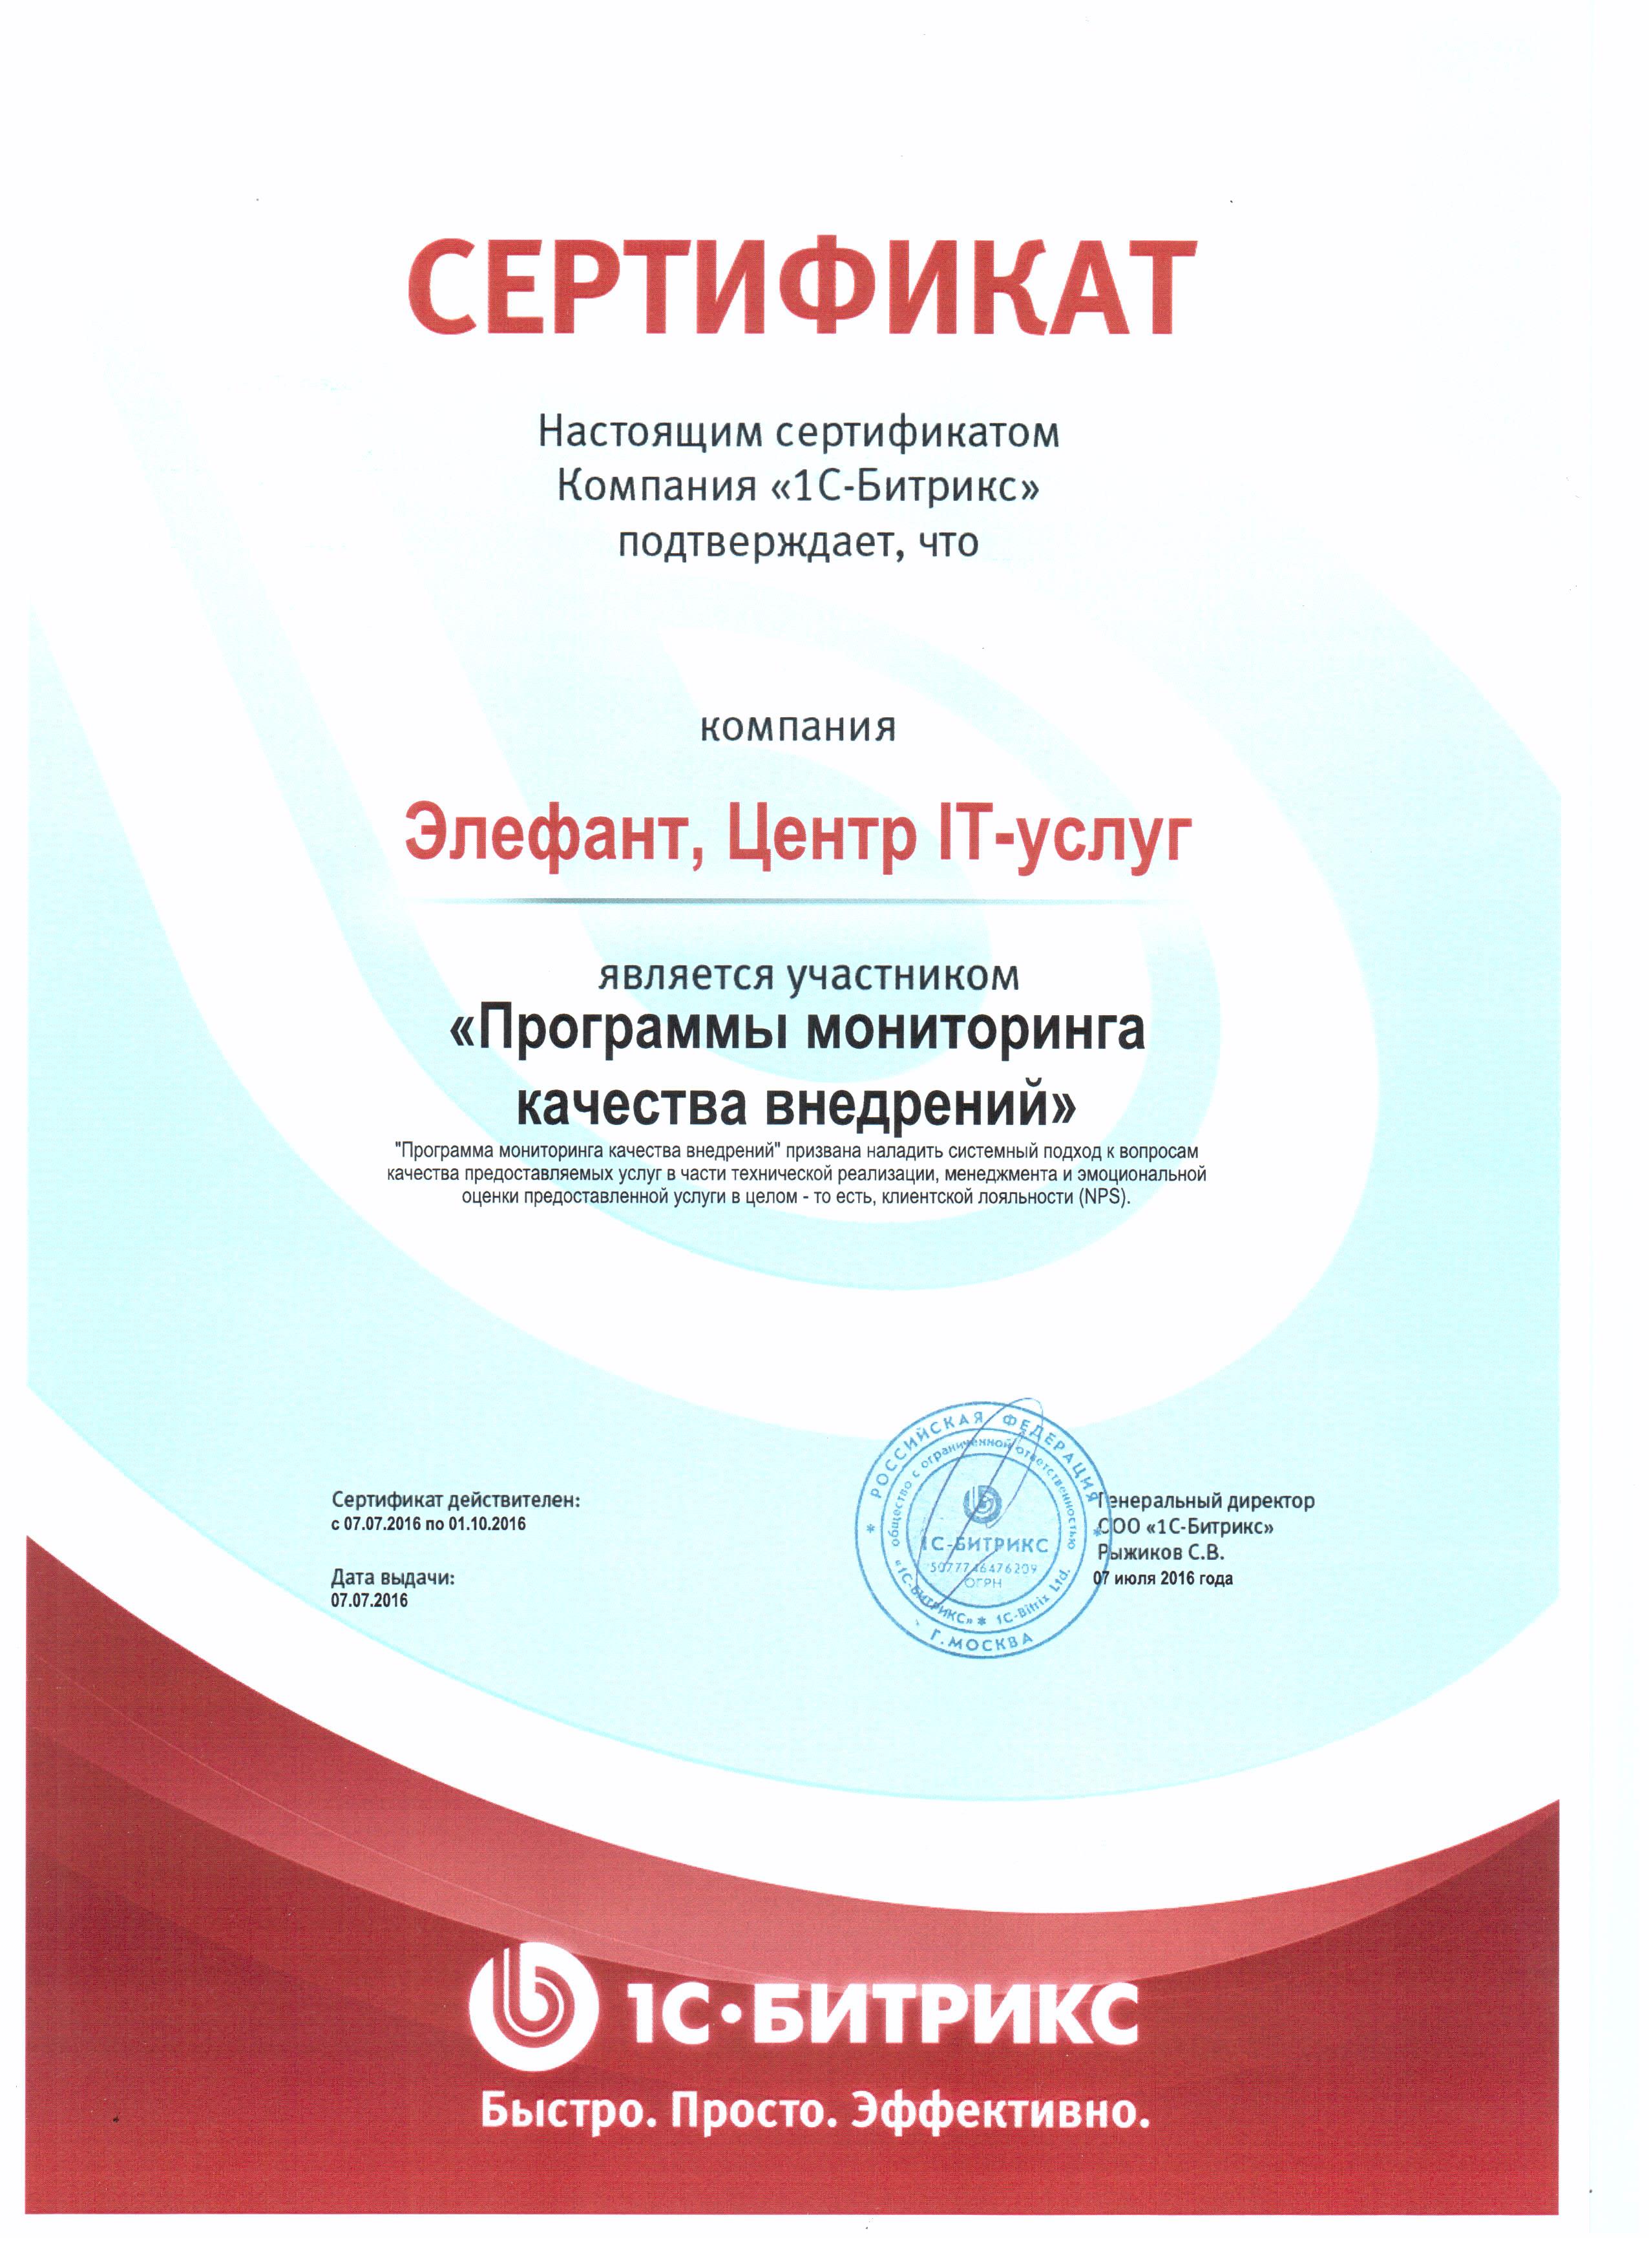 Сертификат от компании "1С-Битрикс"